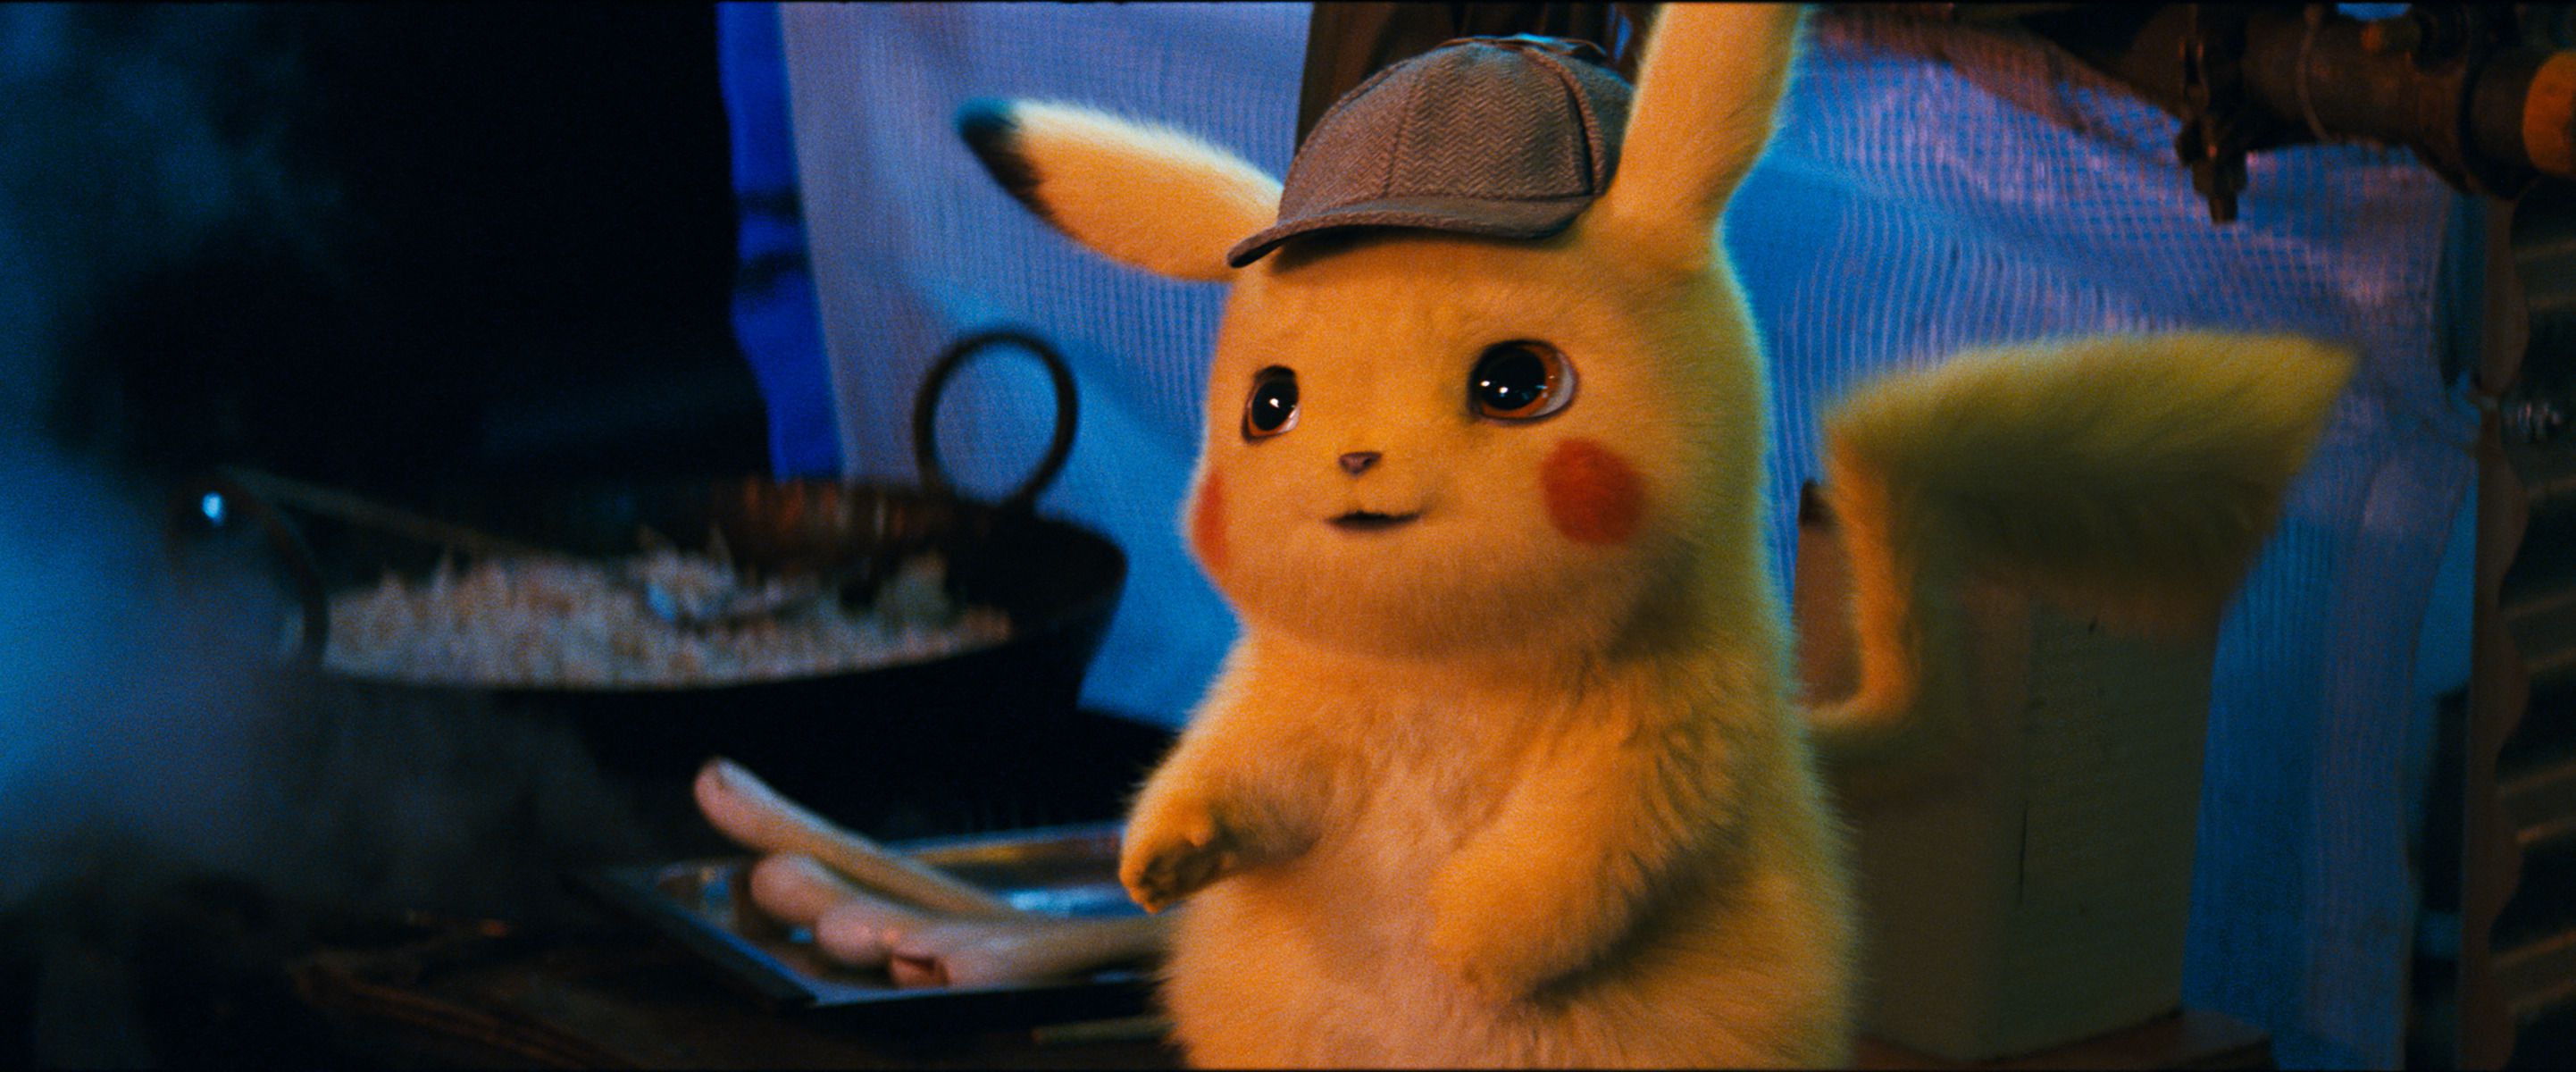 Káº¿t quáº£ hÃ¬nh áº£nh cho Detective Pikachu